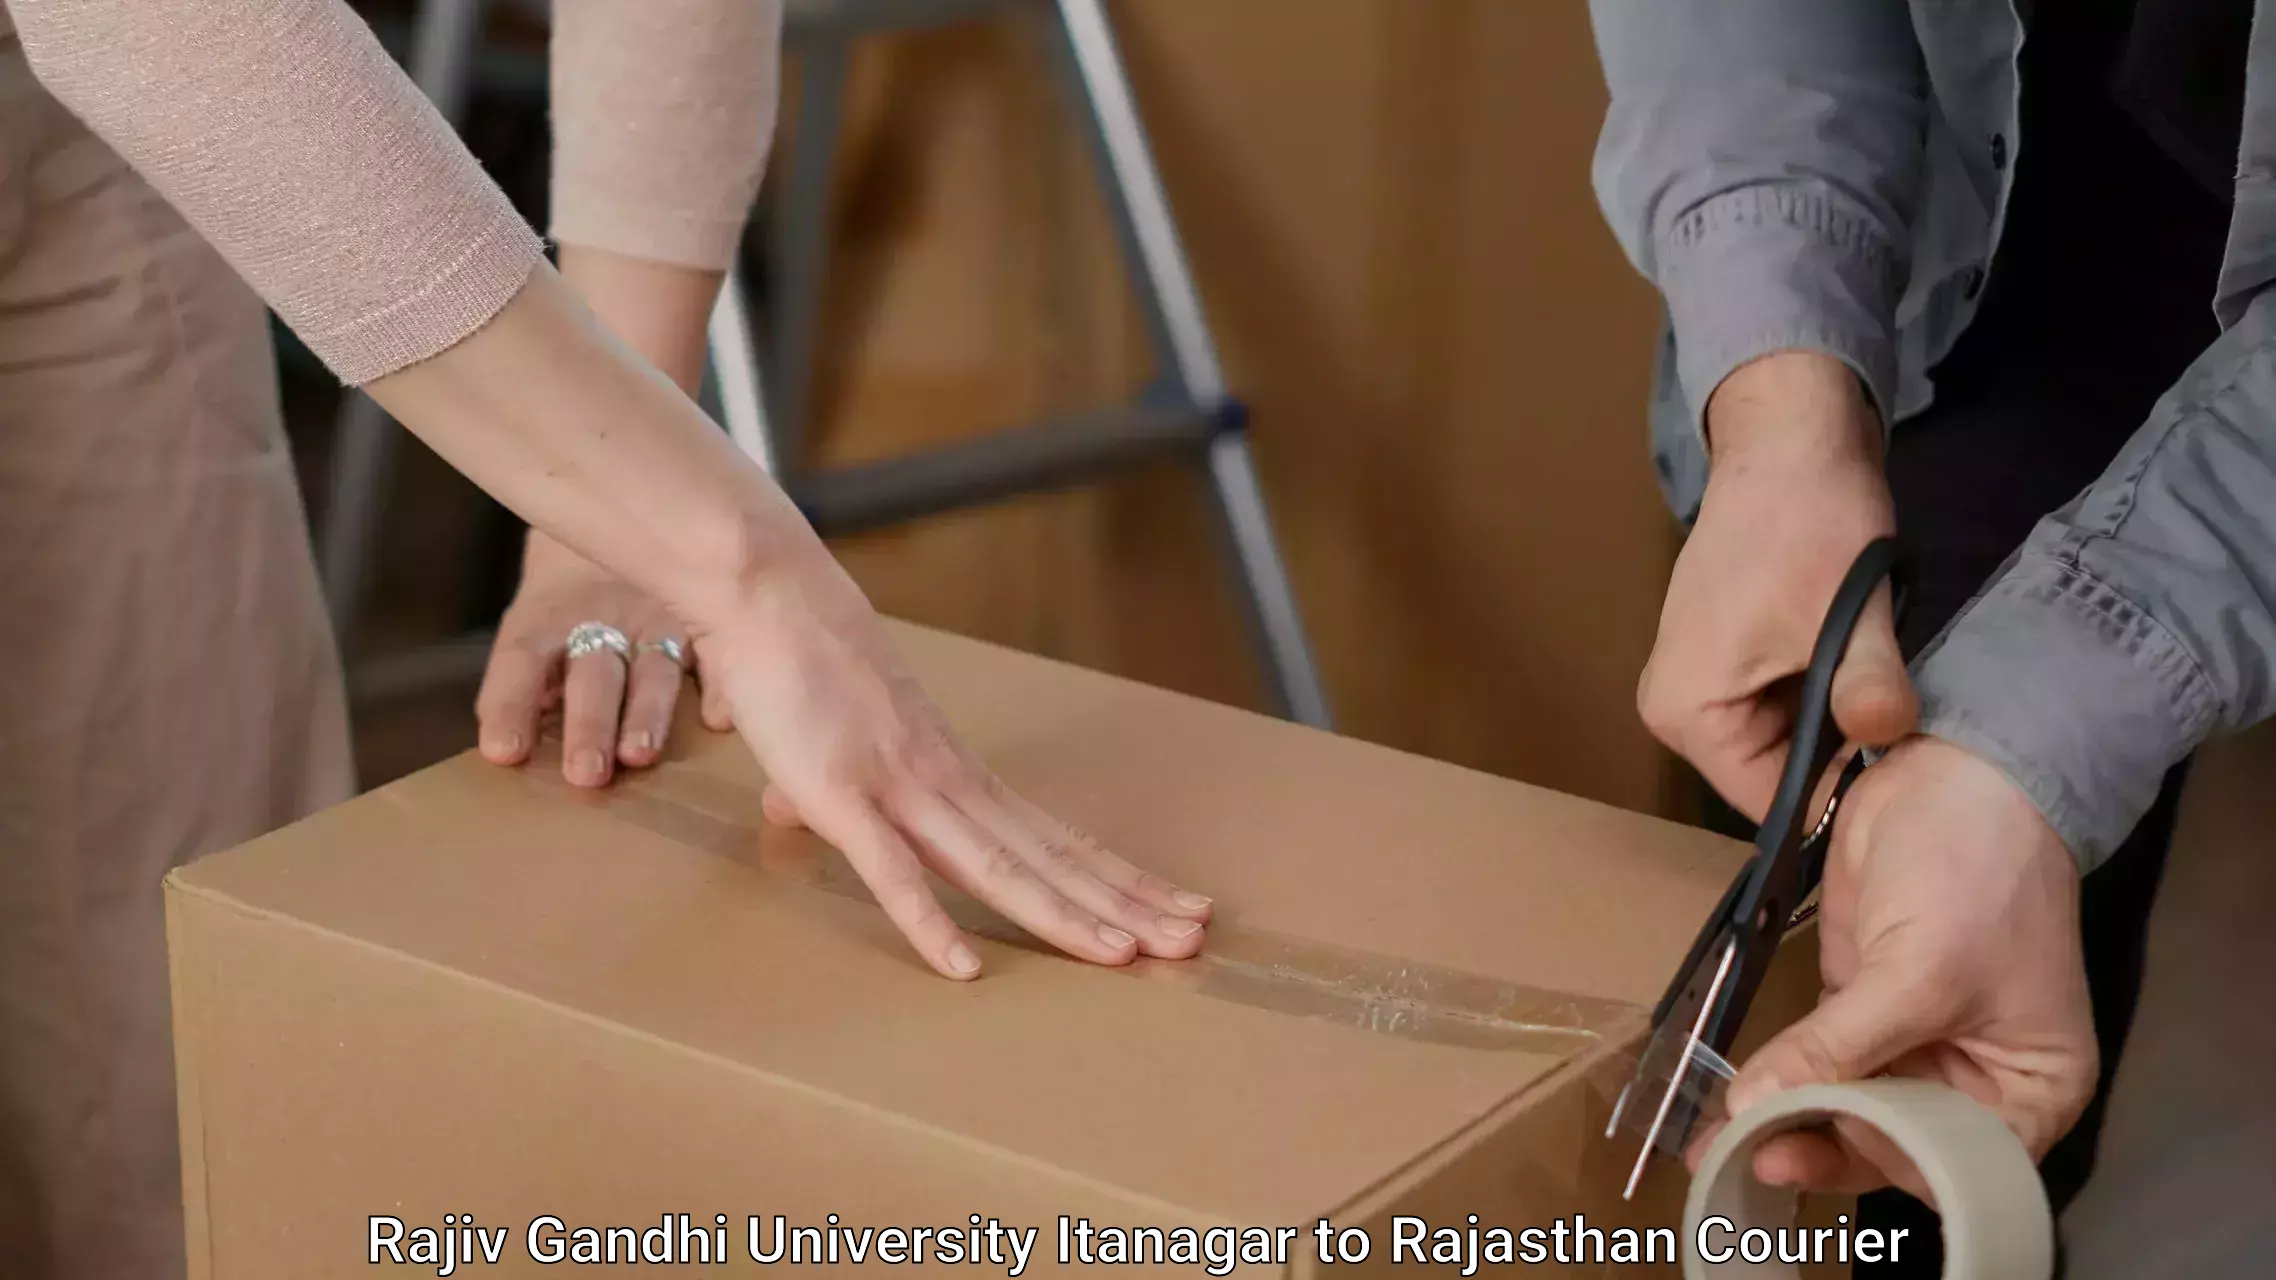 Furniture transport experts Rajiv Gandhi University Itanagar to Rajasthan